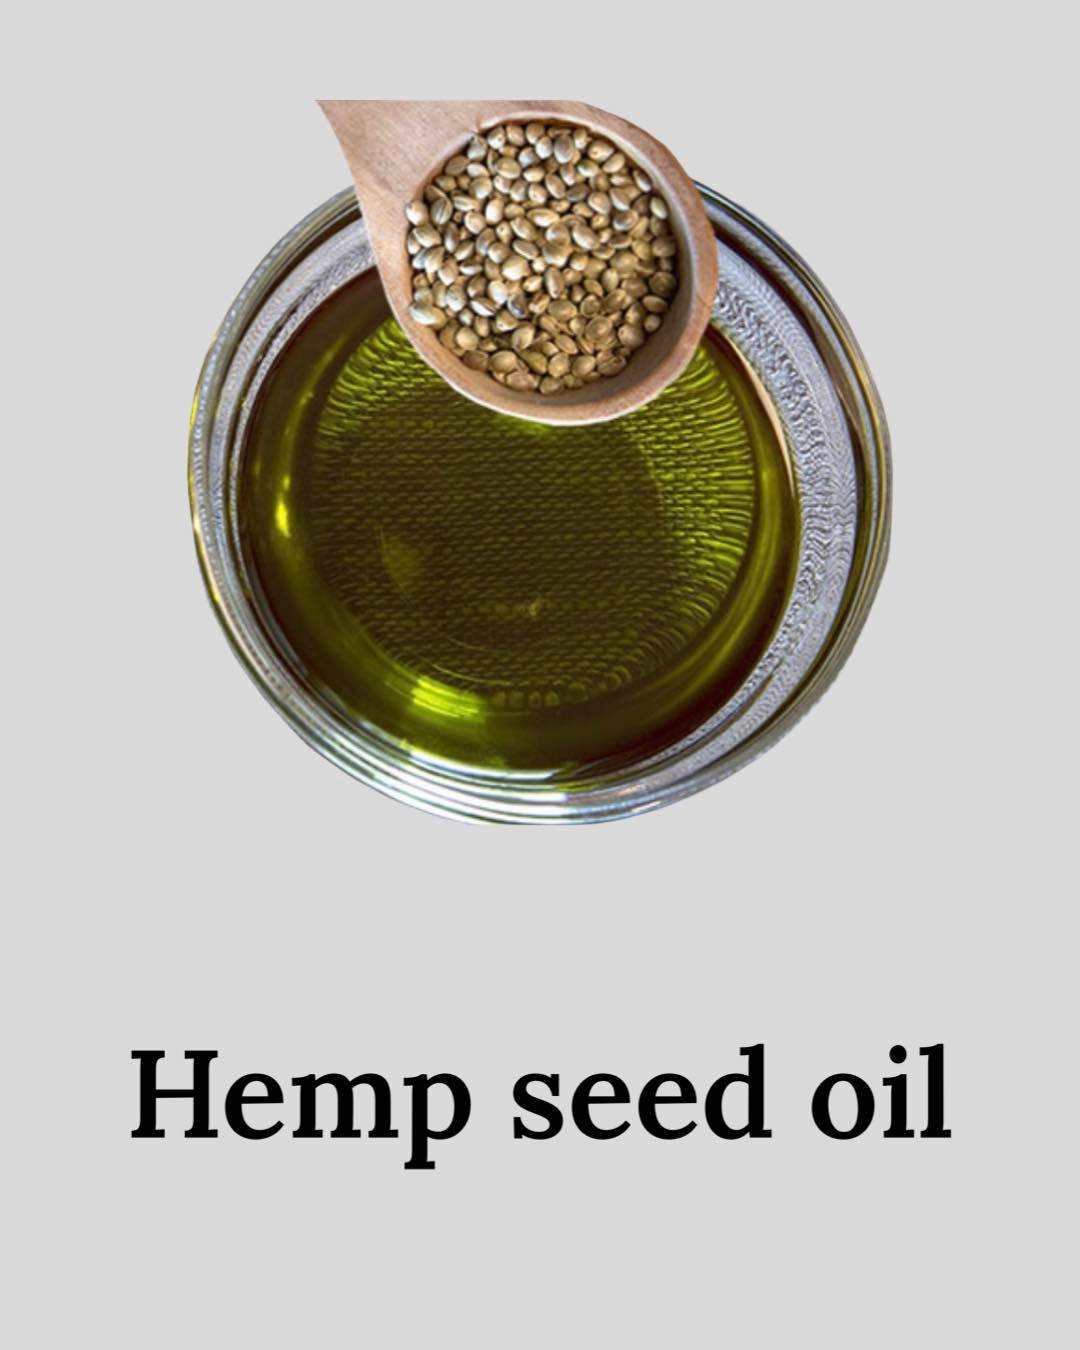 Hemp seed oil